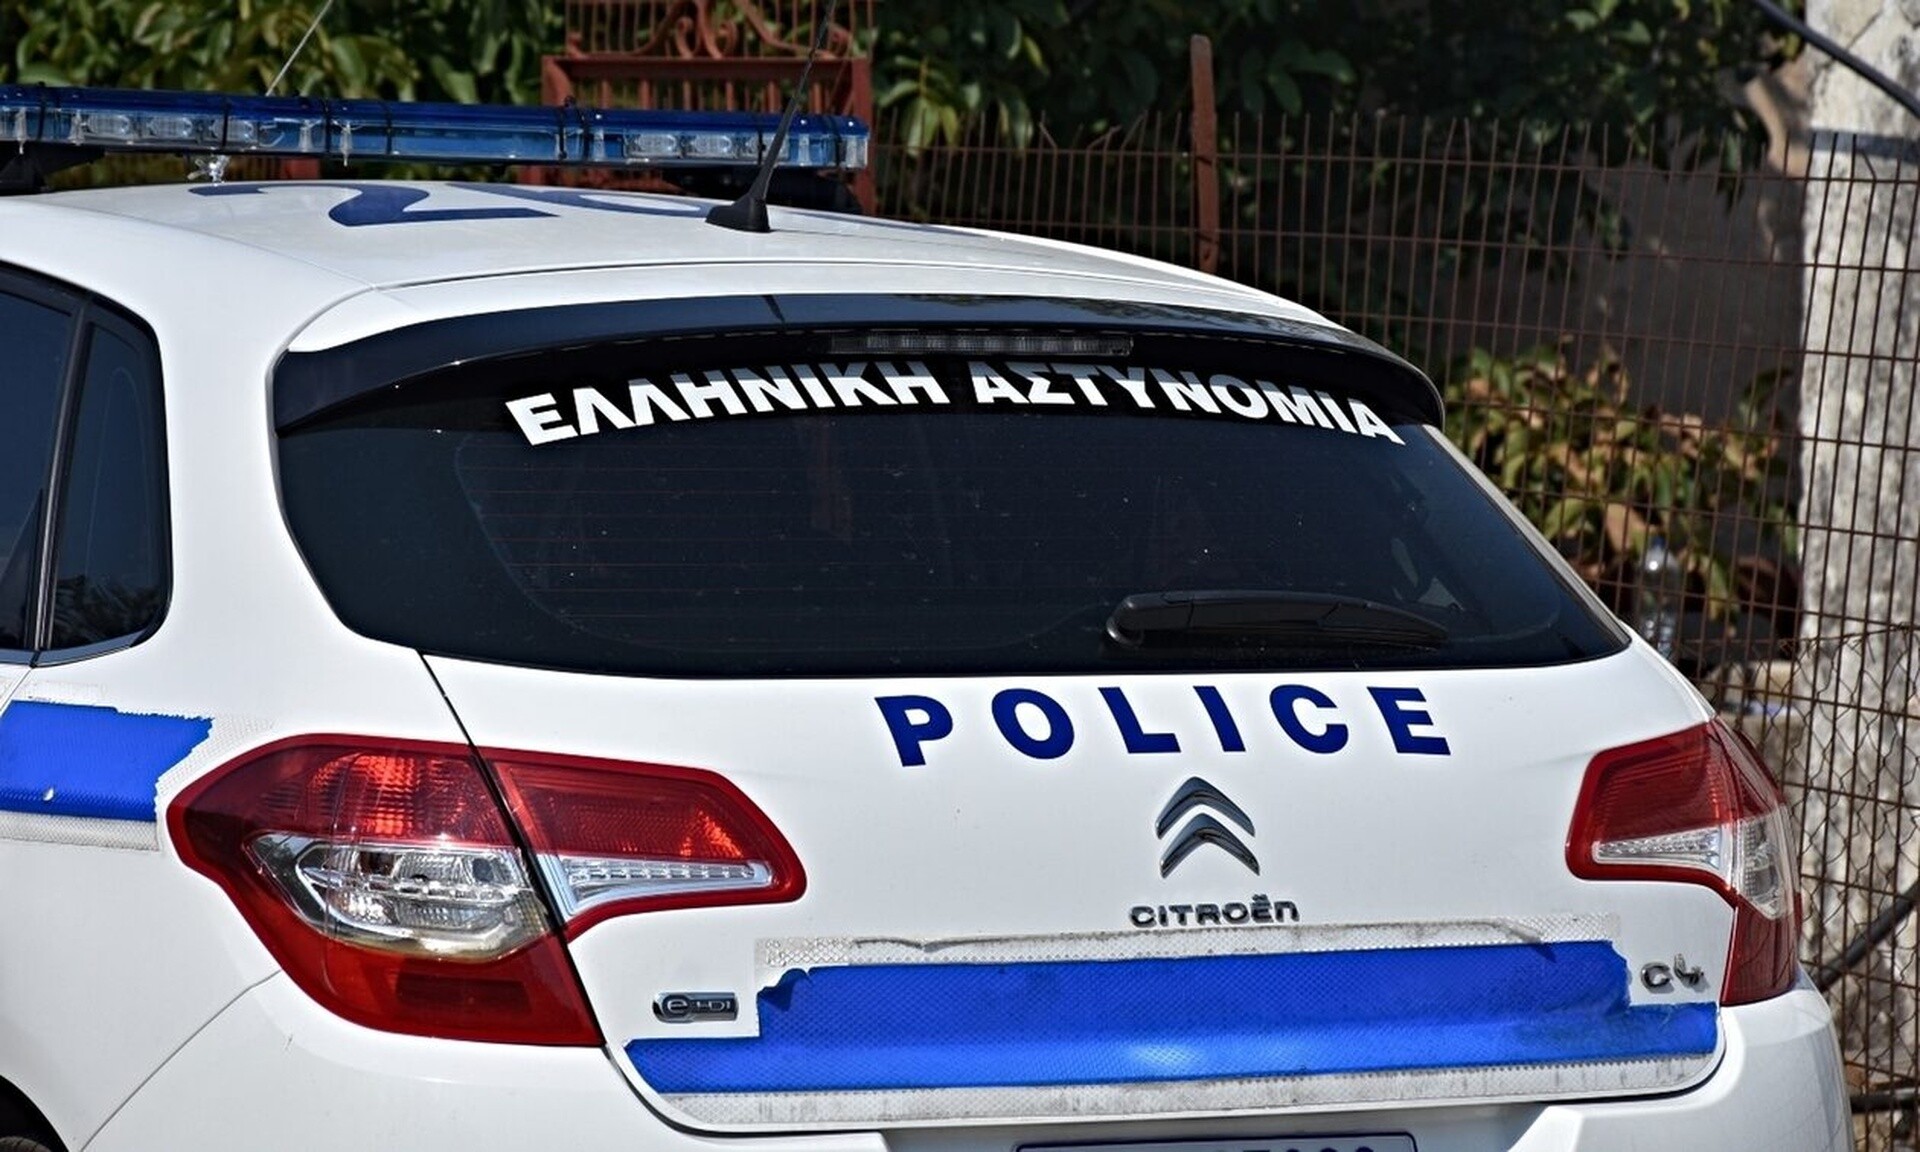 Θεσσαλονίκη: Οδηγός χωρίς δίπλωμα έπεσε πάνω σε περιπολικό και προσπάθησε να διαφύγει